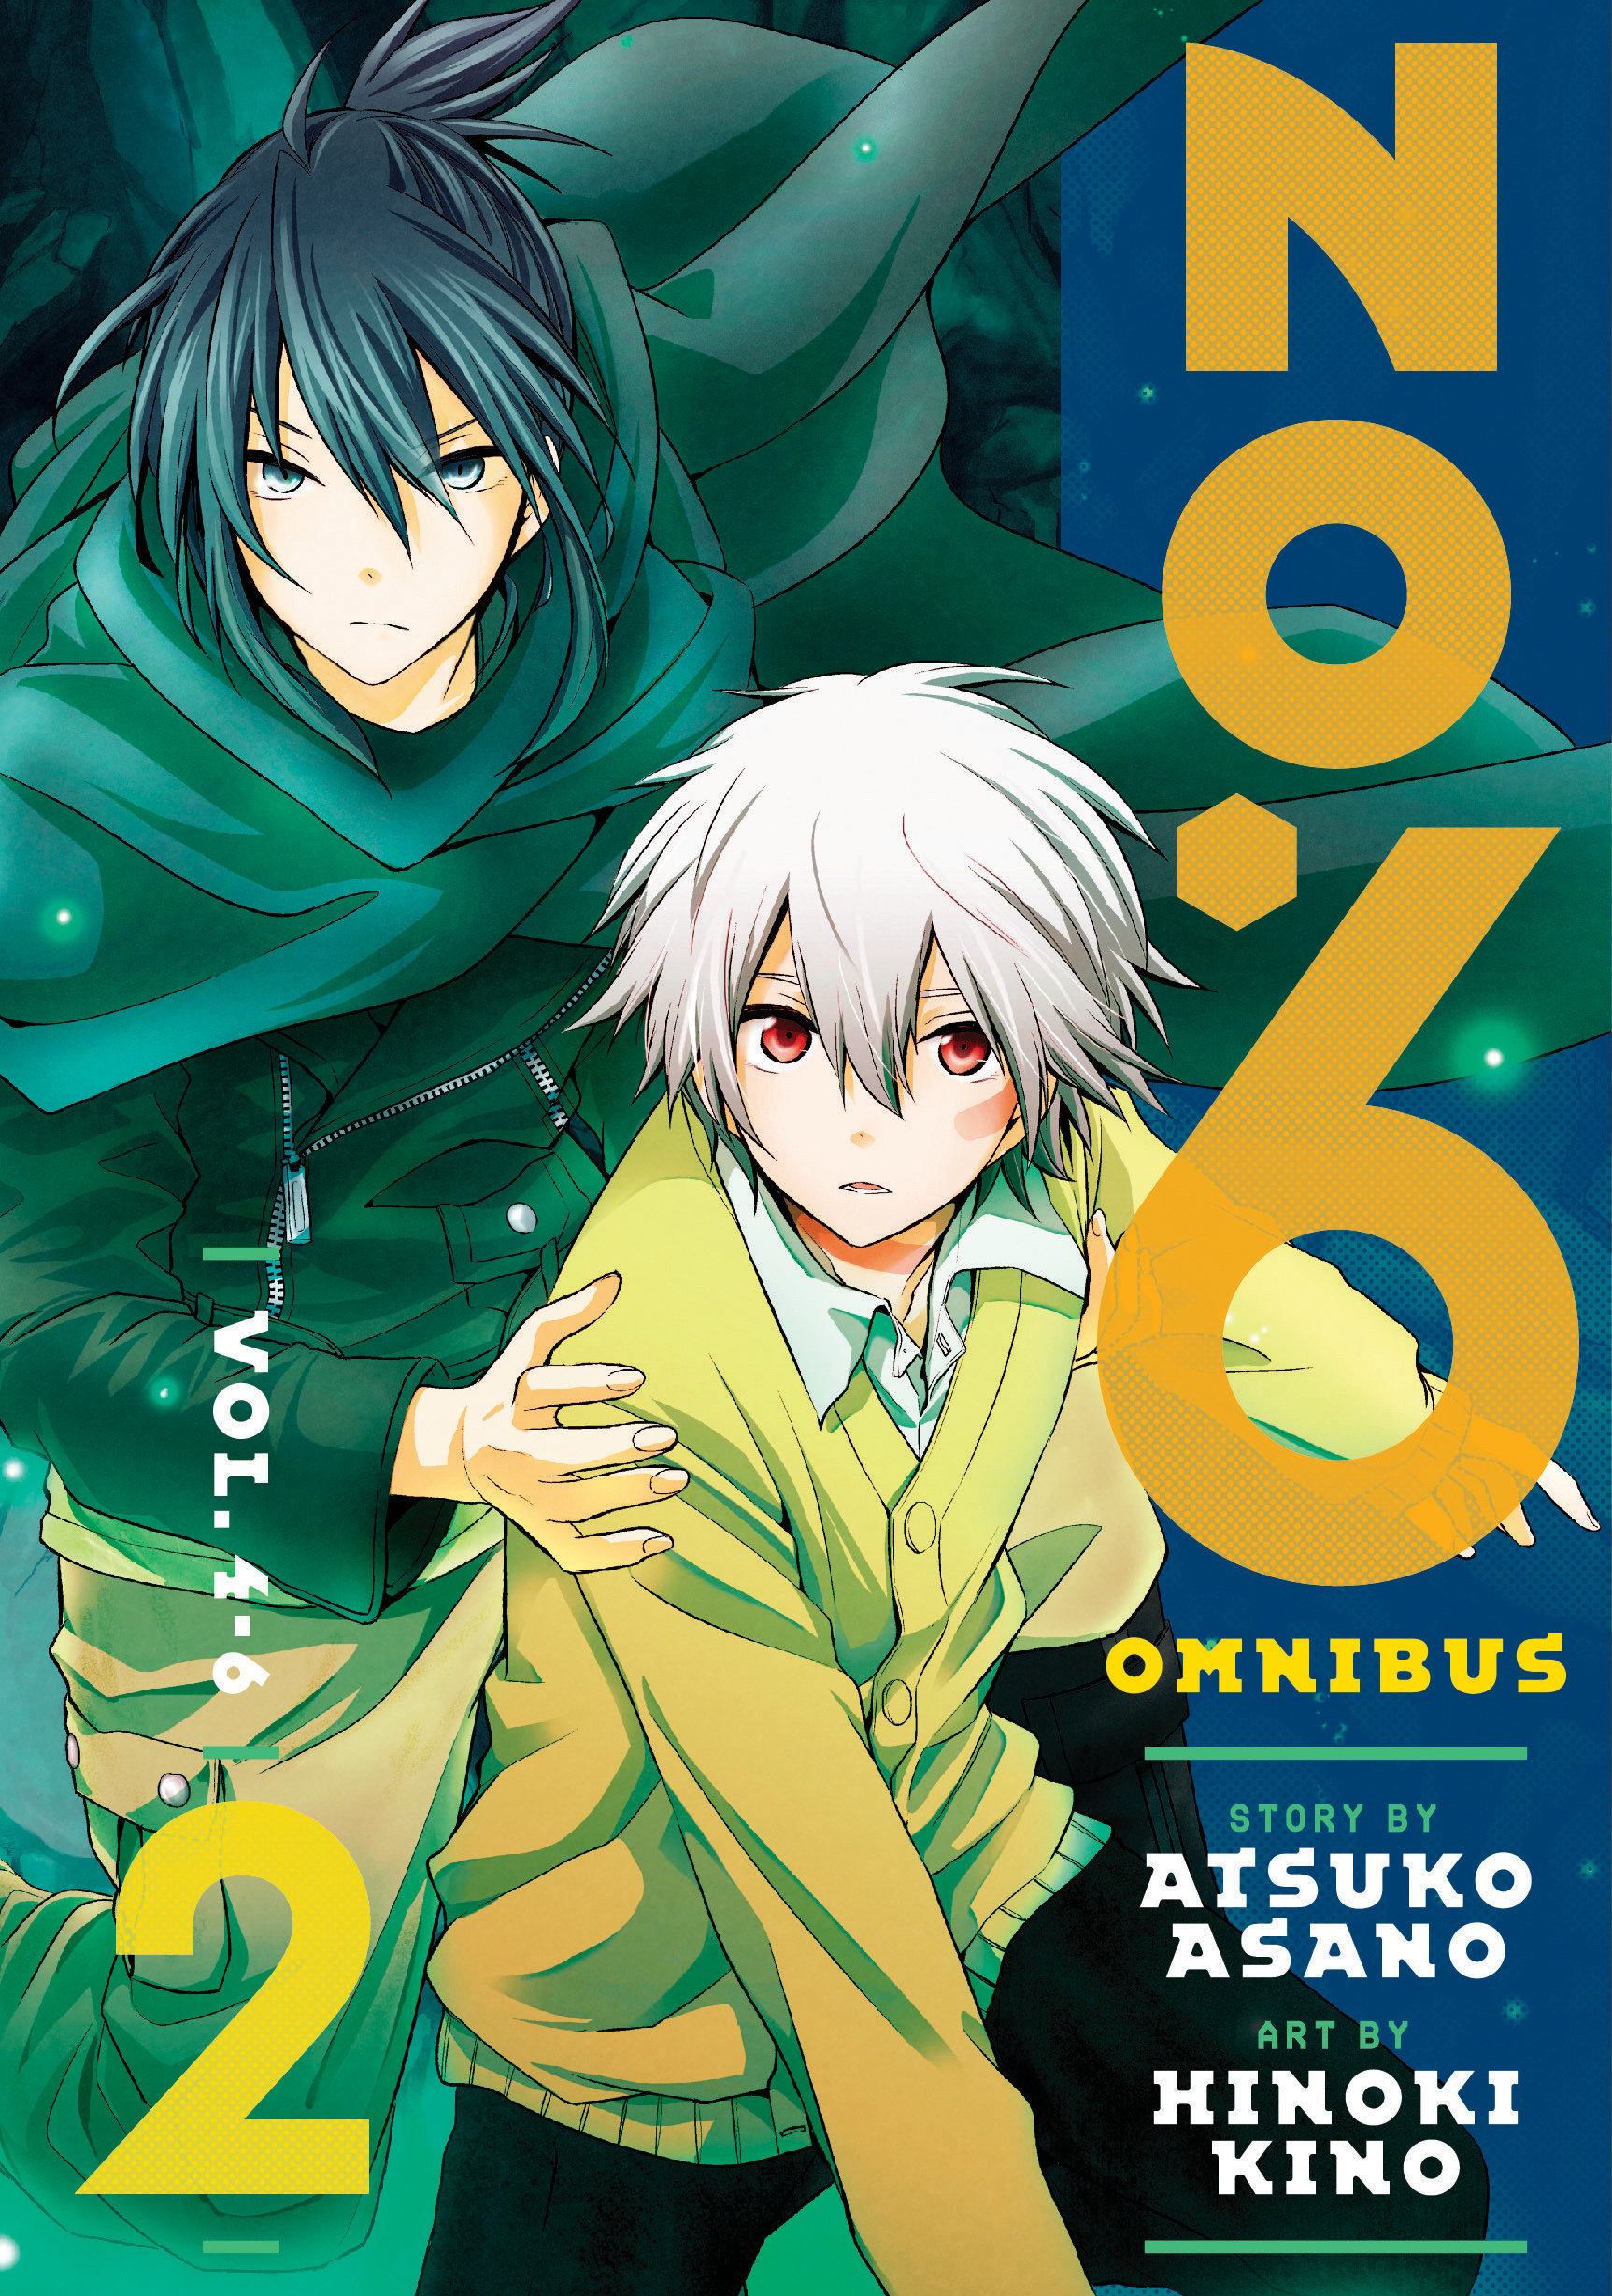 No 6 Omnibus Manga Volume 2 (Vol 4-6)